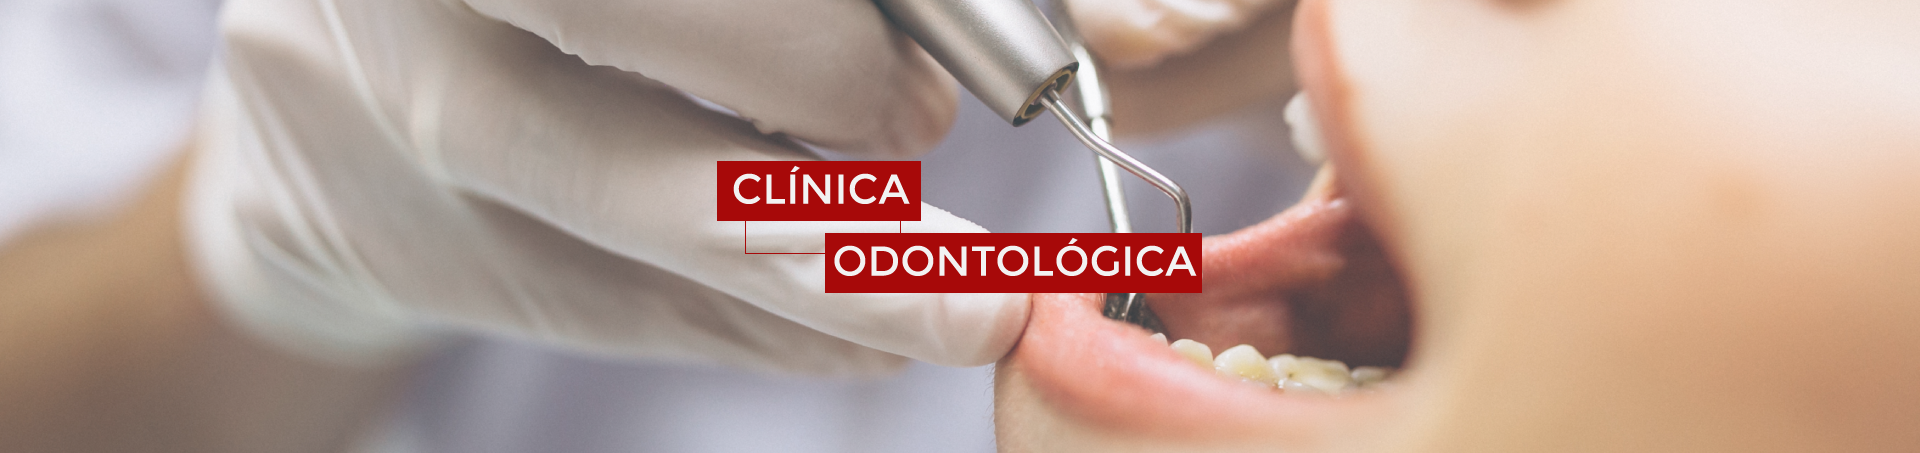 Banner Clínica Odontológica